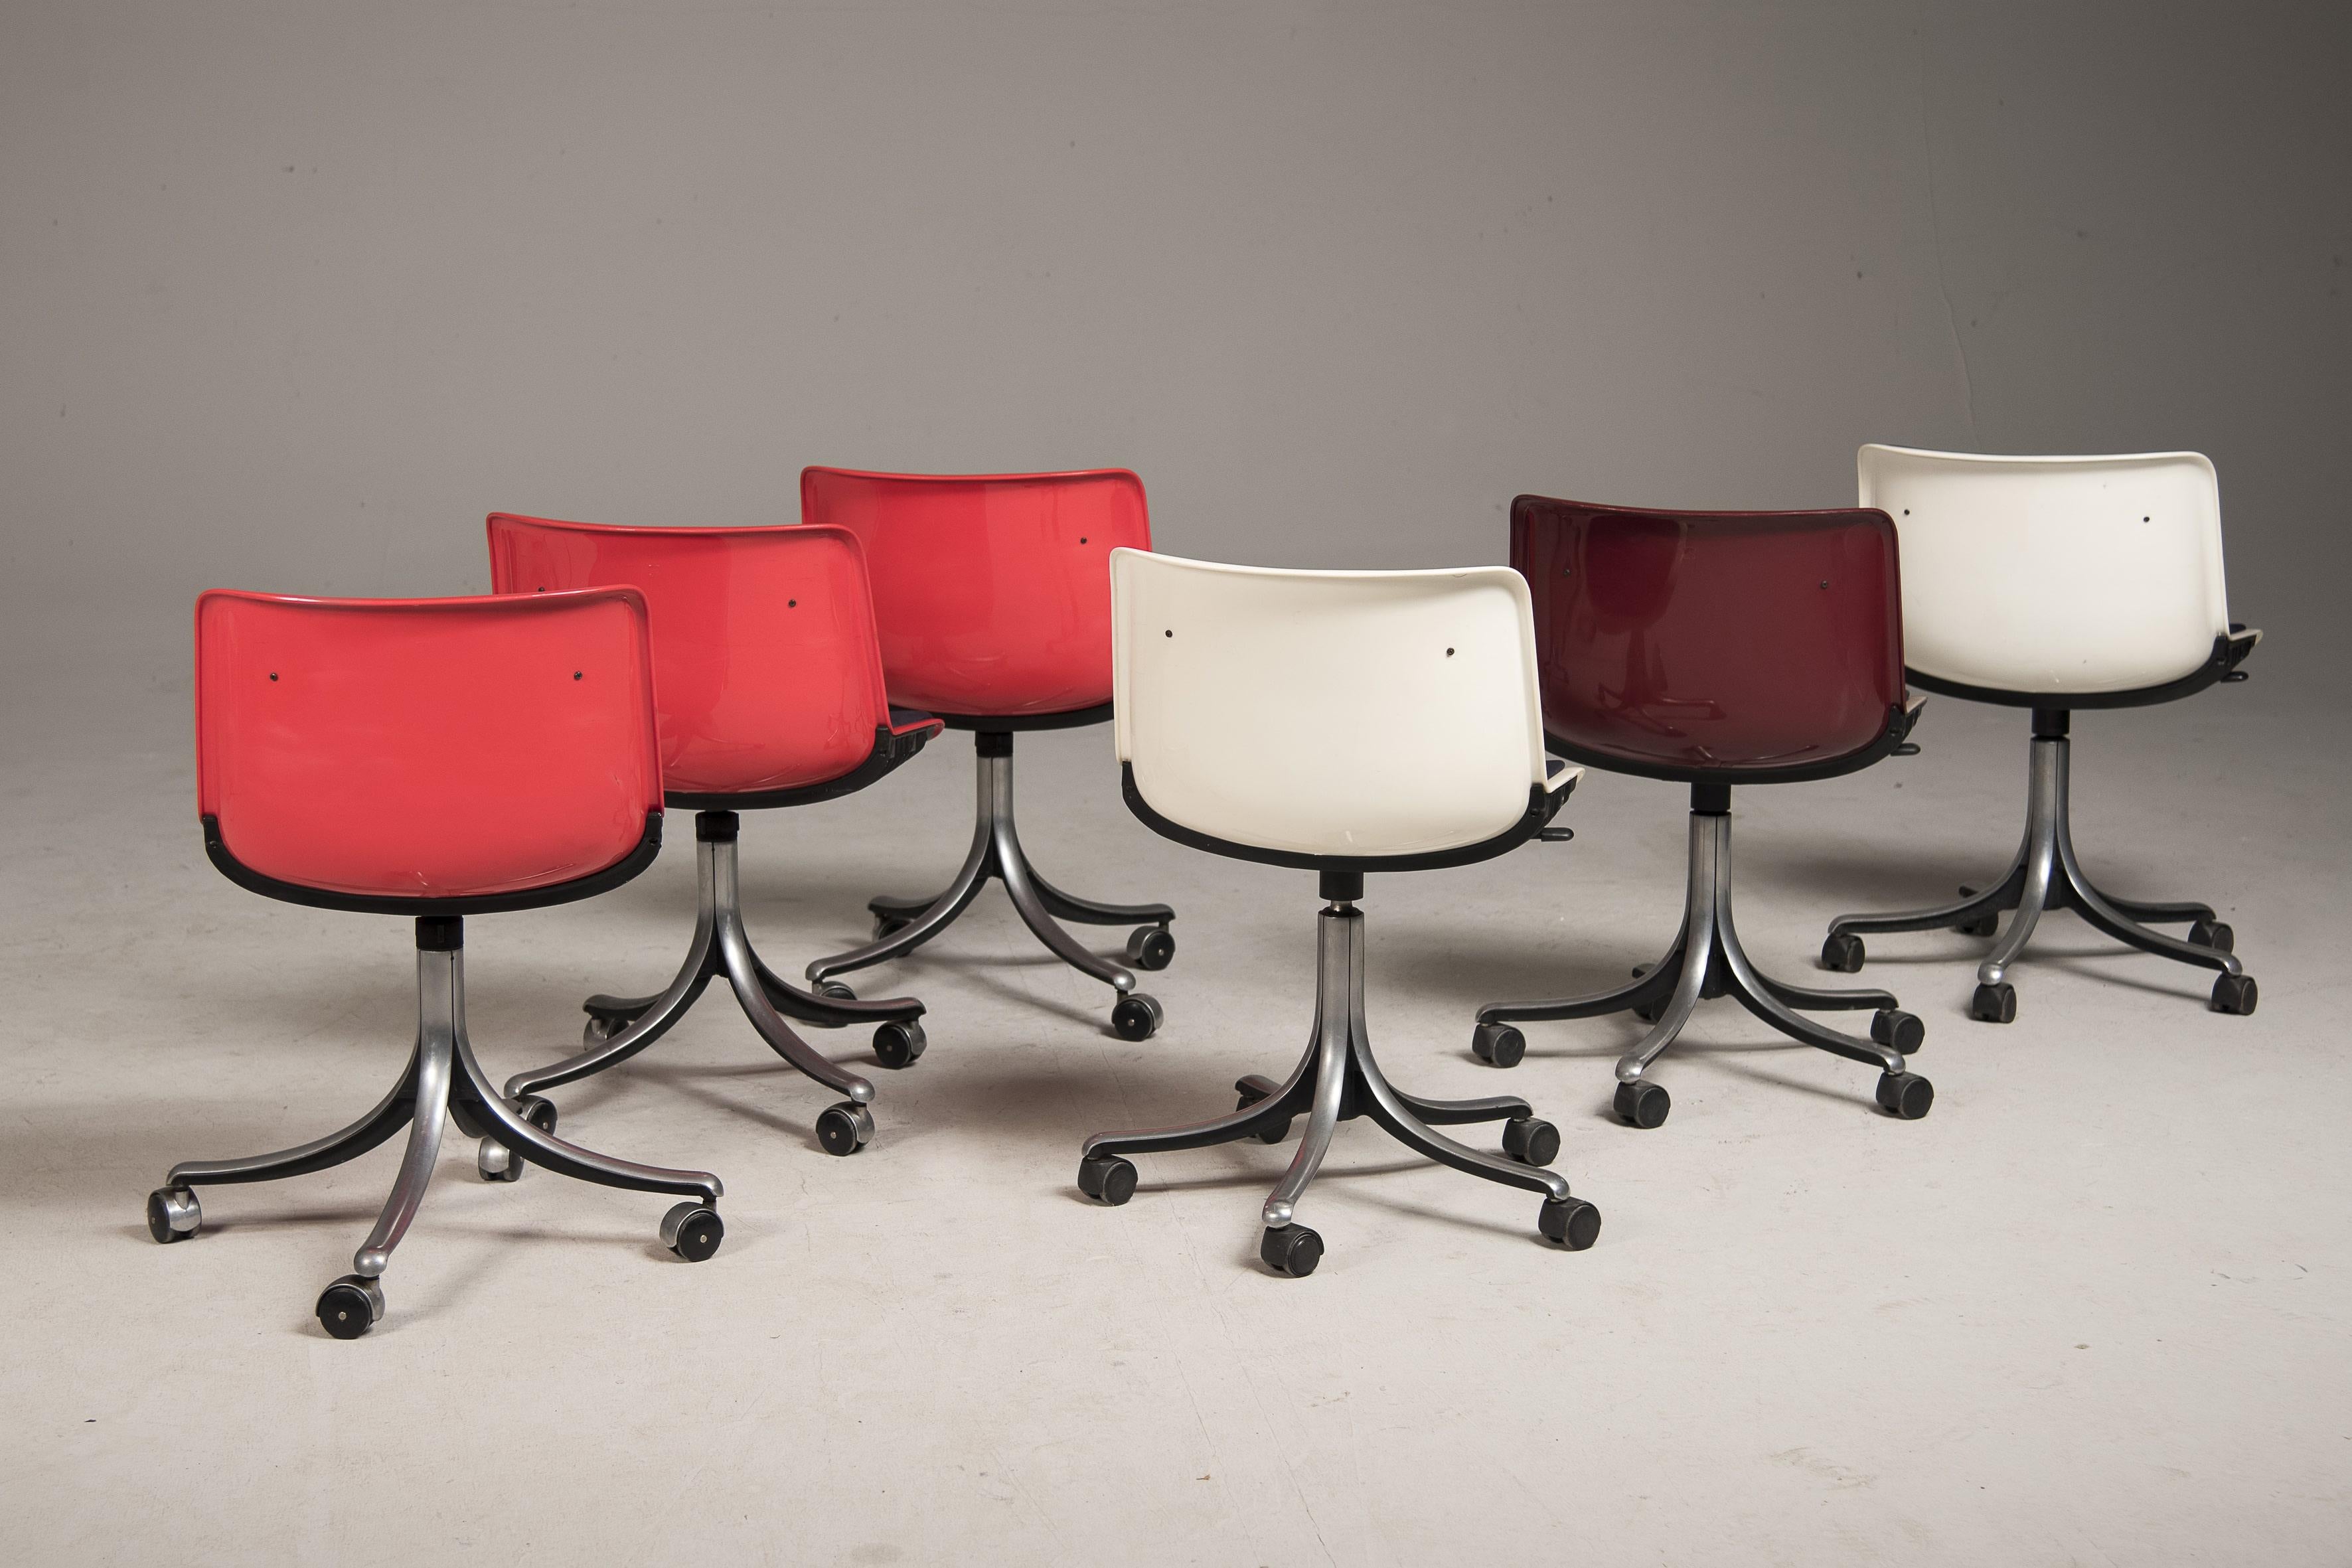 Fin du 20e siècle Osvaldo Borsani pour Tecno fauteuils de bureau à roulettes pivotantes des années 1980 en vente